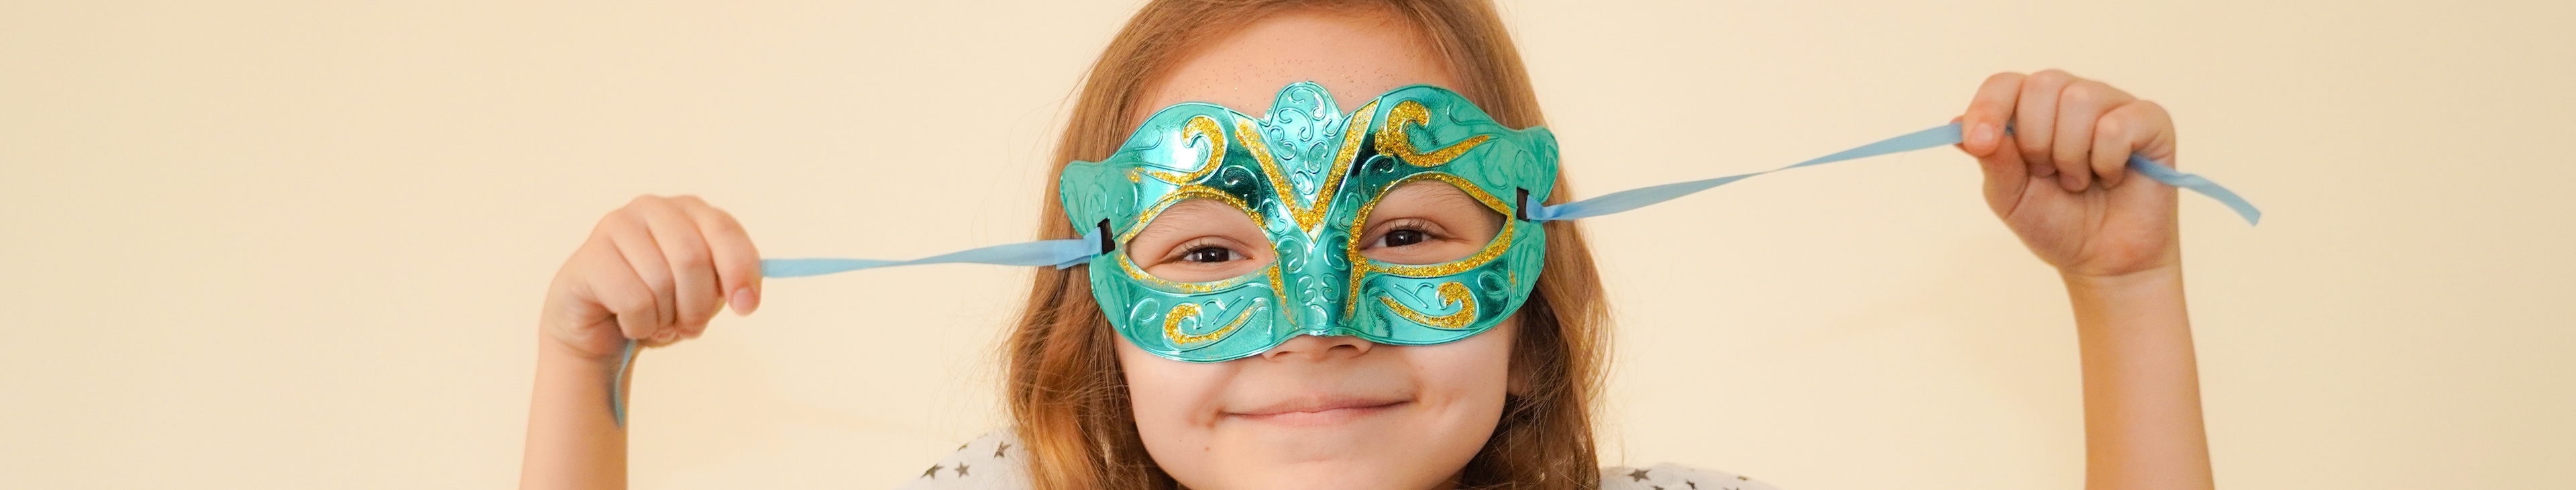 Haz tus máscaras venecianas en casa y triunfa en Carnaval